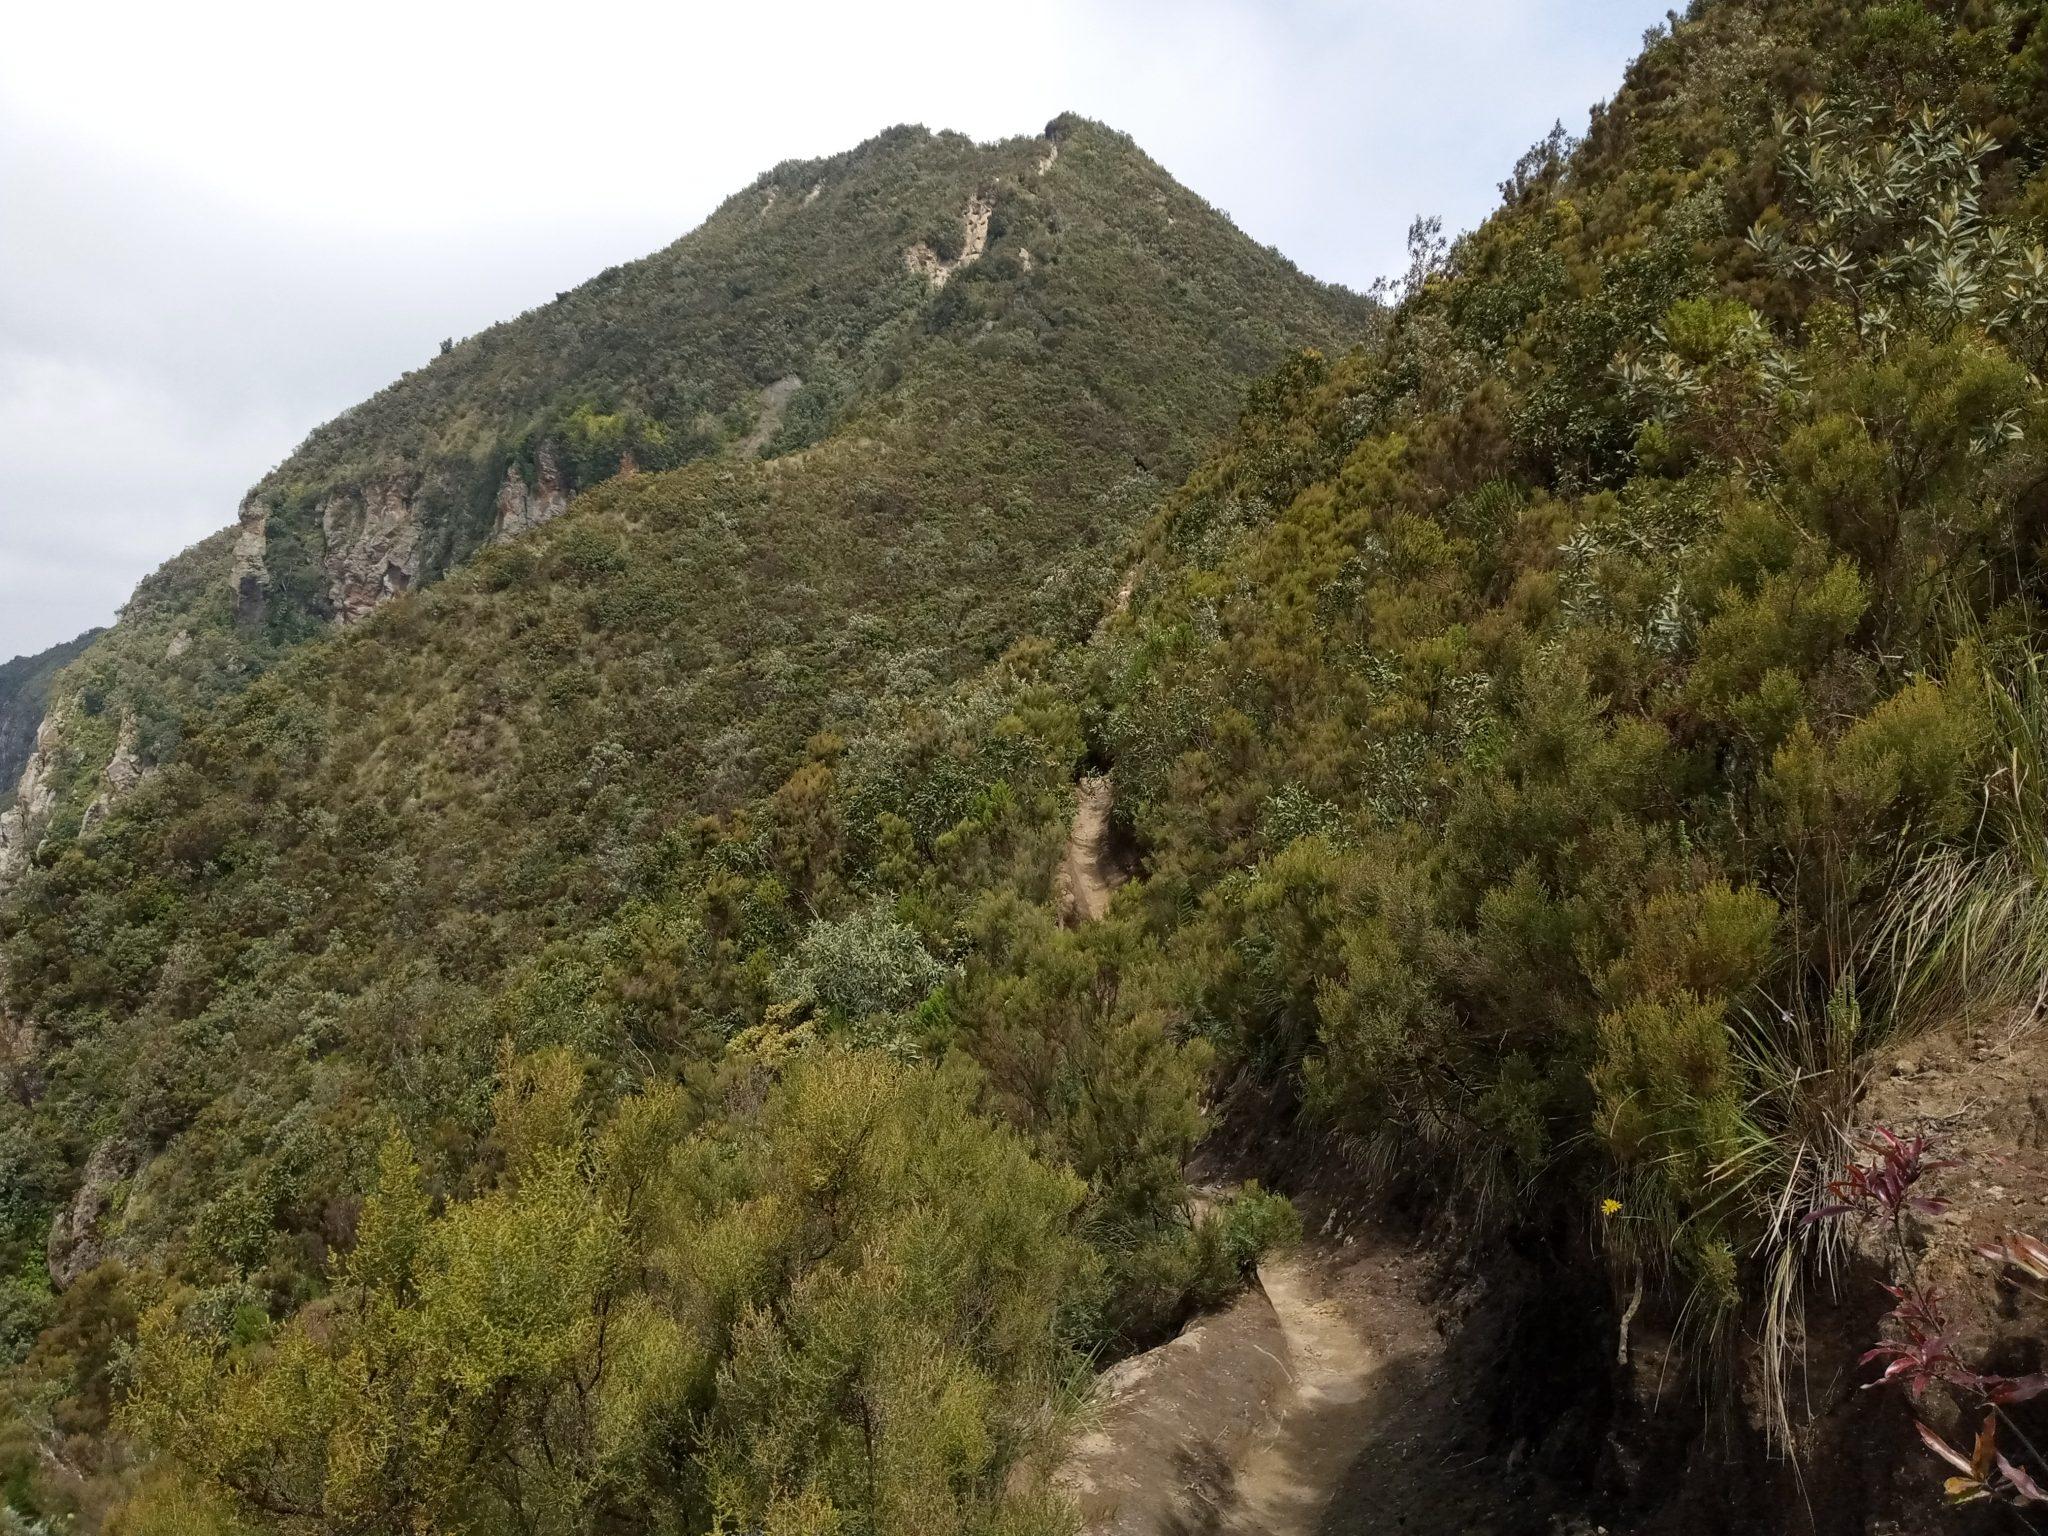 Full Day Trekking Adventure: Hiking Mt. Longonot